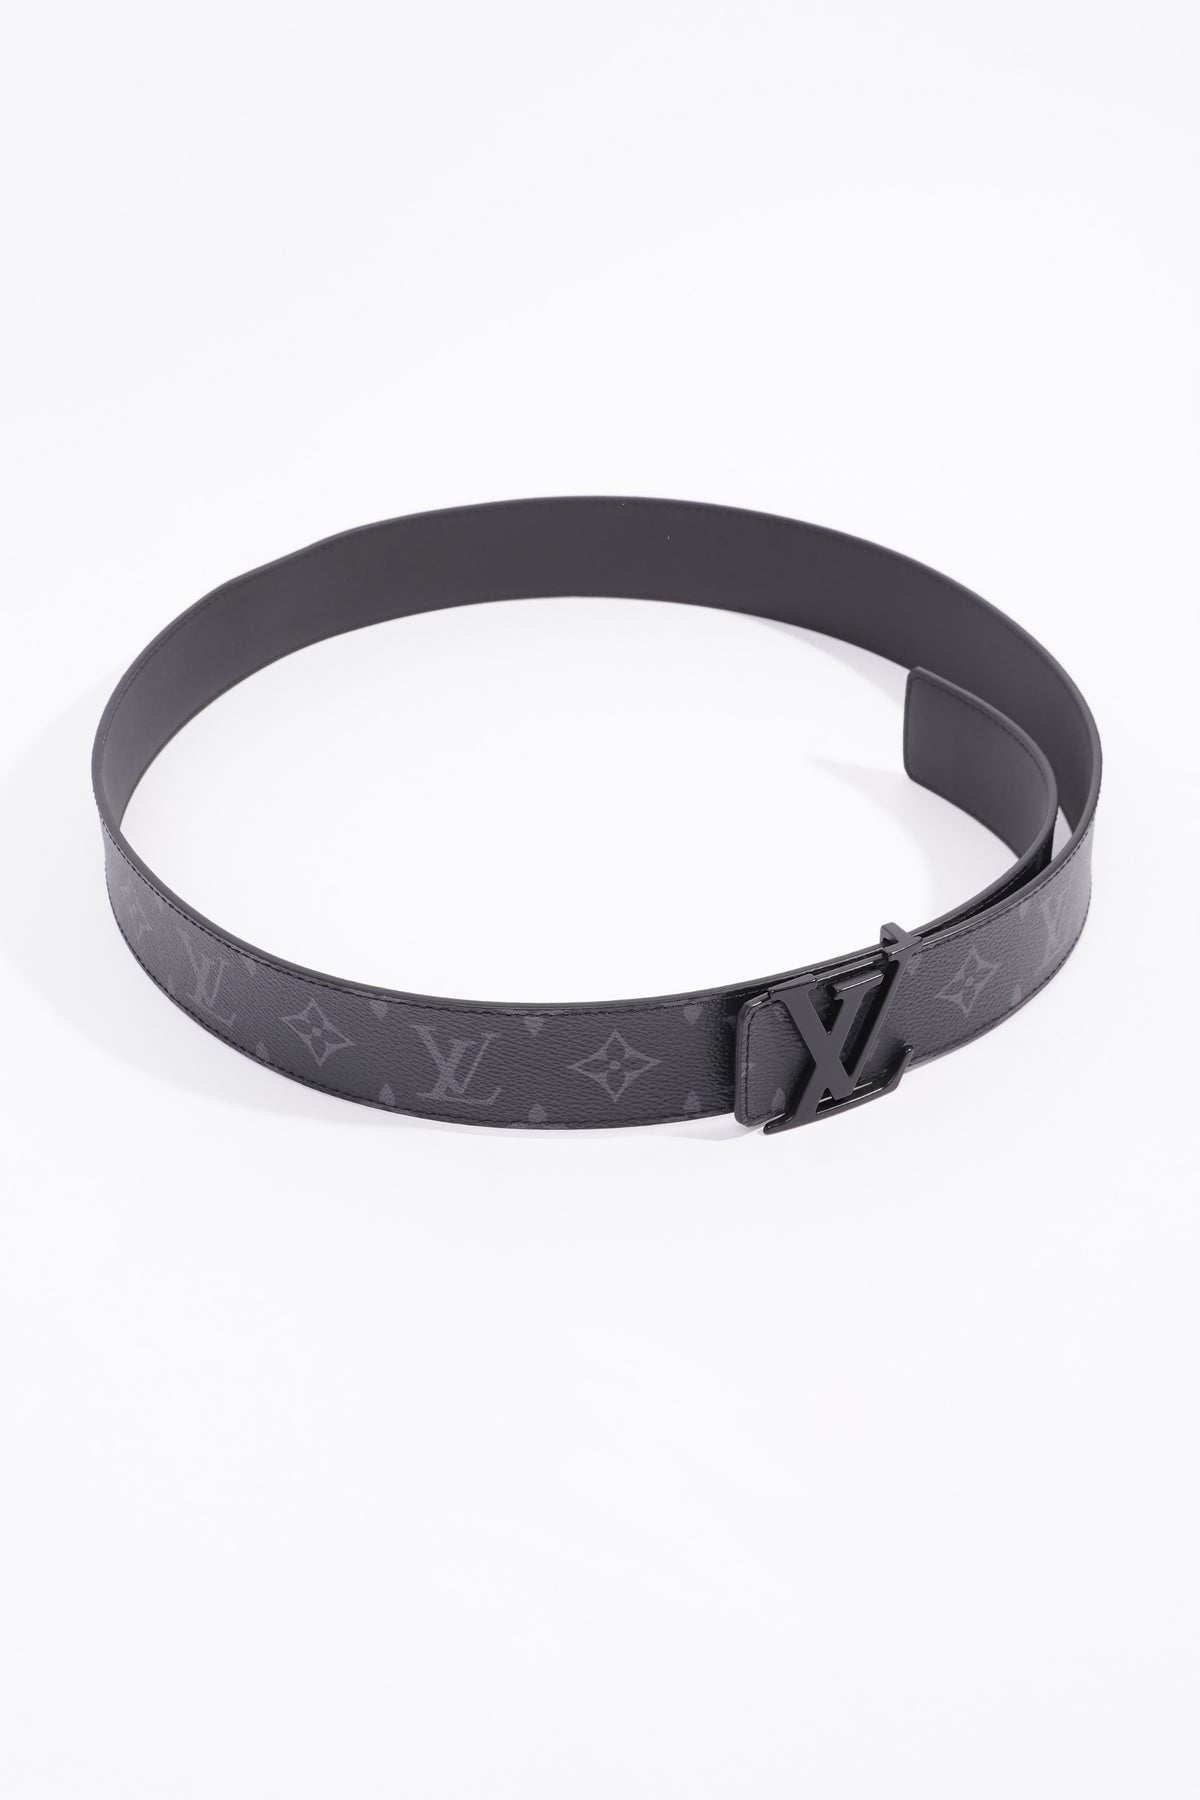 Louis Vuitton Black Leather Initiales Slim Buckle Belt 75CM Louis Vuitton